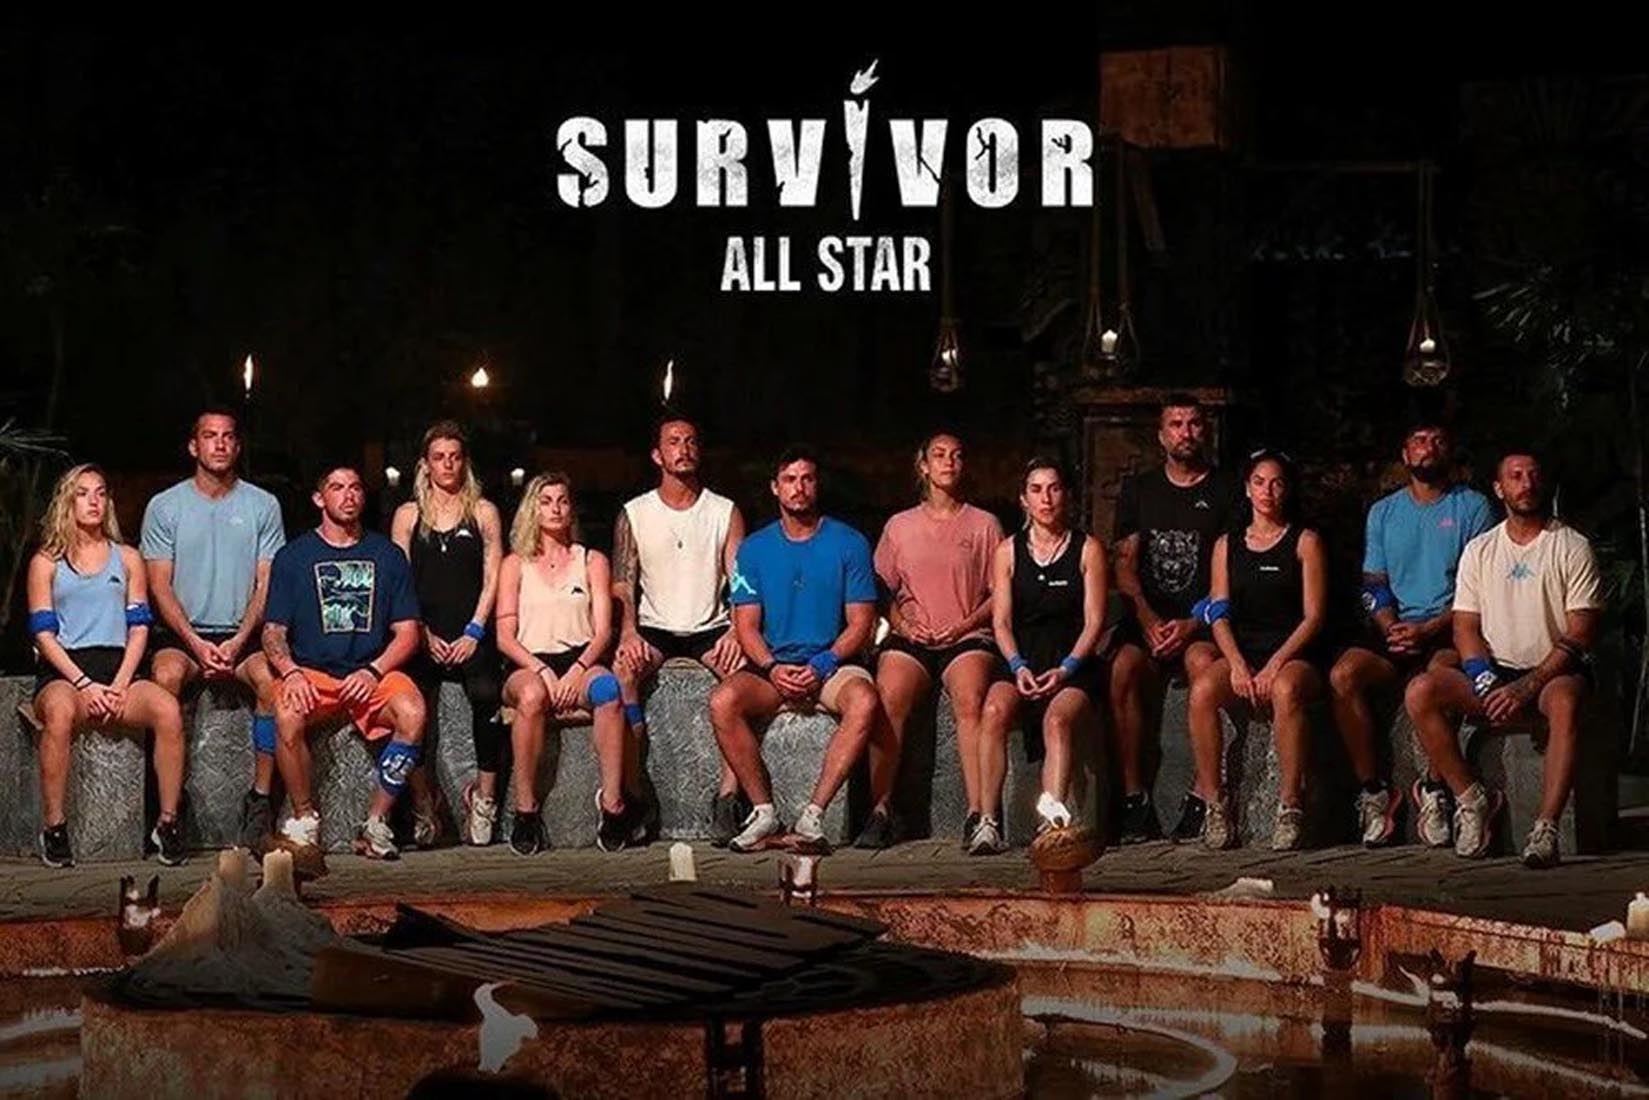 Survivor dokunulmazlık oyununu kim kazandı? 20 Şubat Survivor All Star'da dokunulmazlık oyununu kazanan hangi takım oldu?